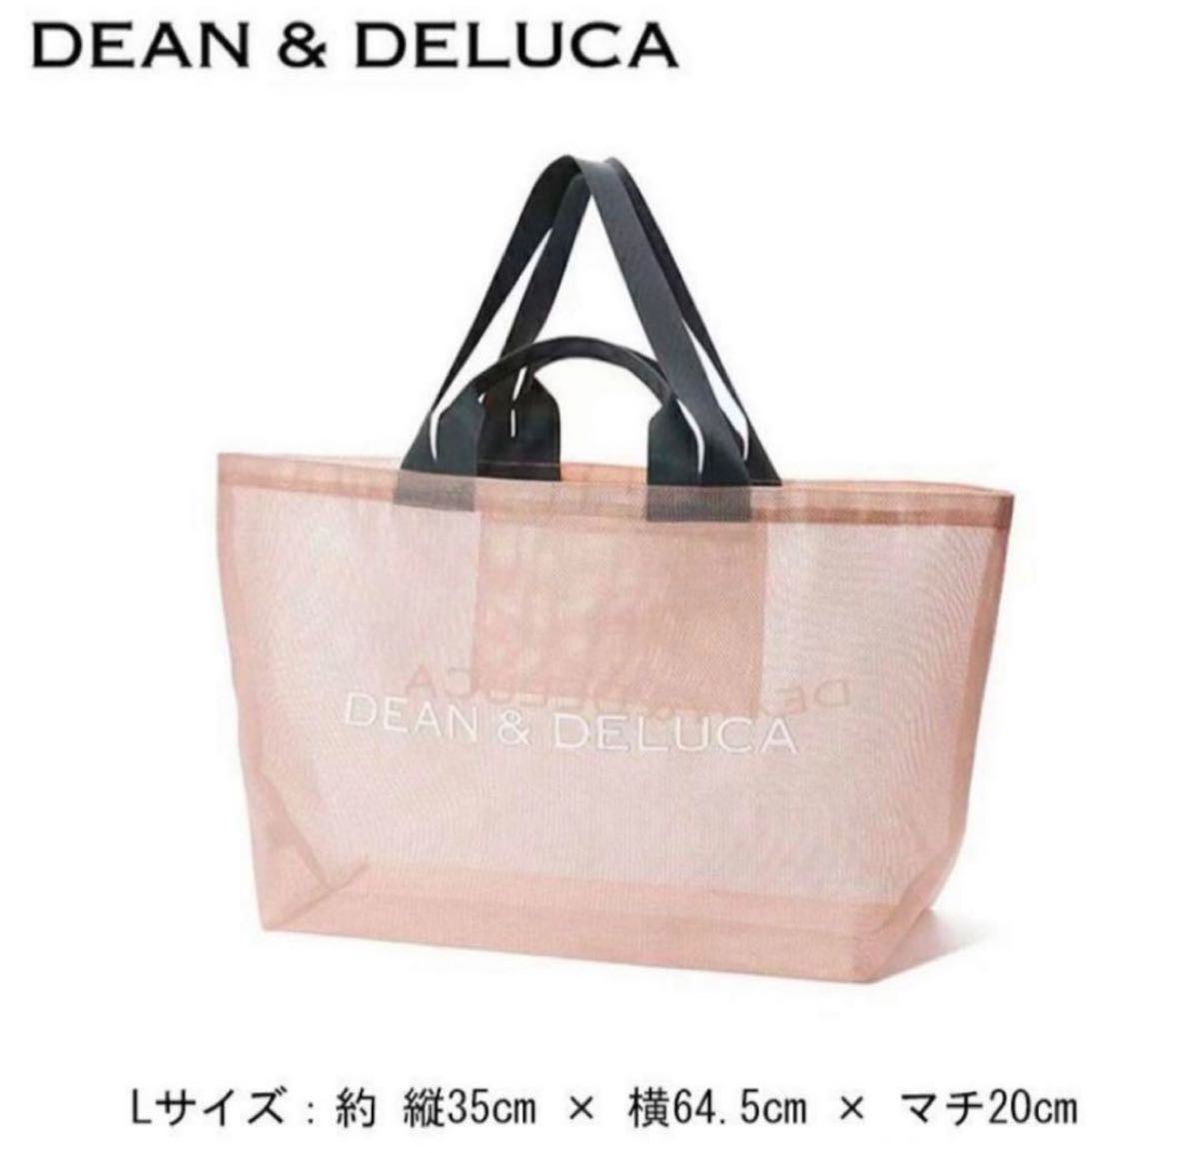 即購入OK 新品未使用 DEAN&DELUCA Lサイズ ピンク レジャーバッグ エコバッグ トートバッグ プール